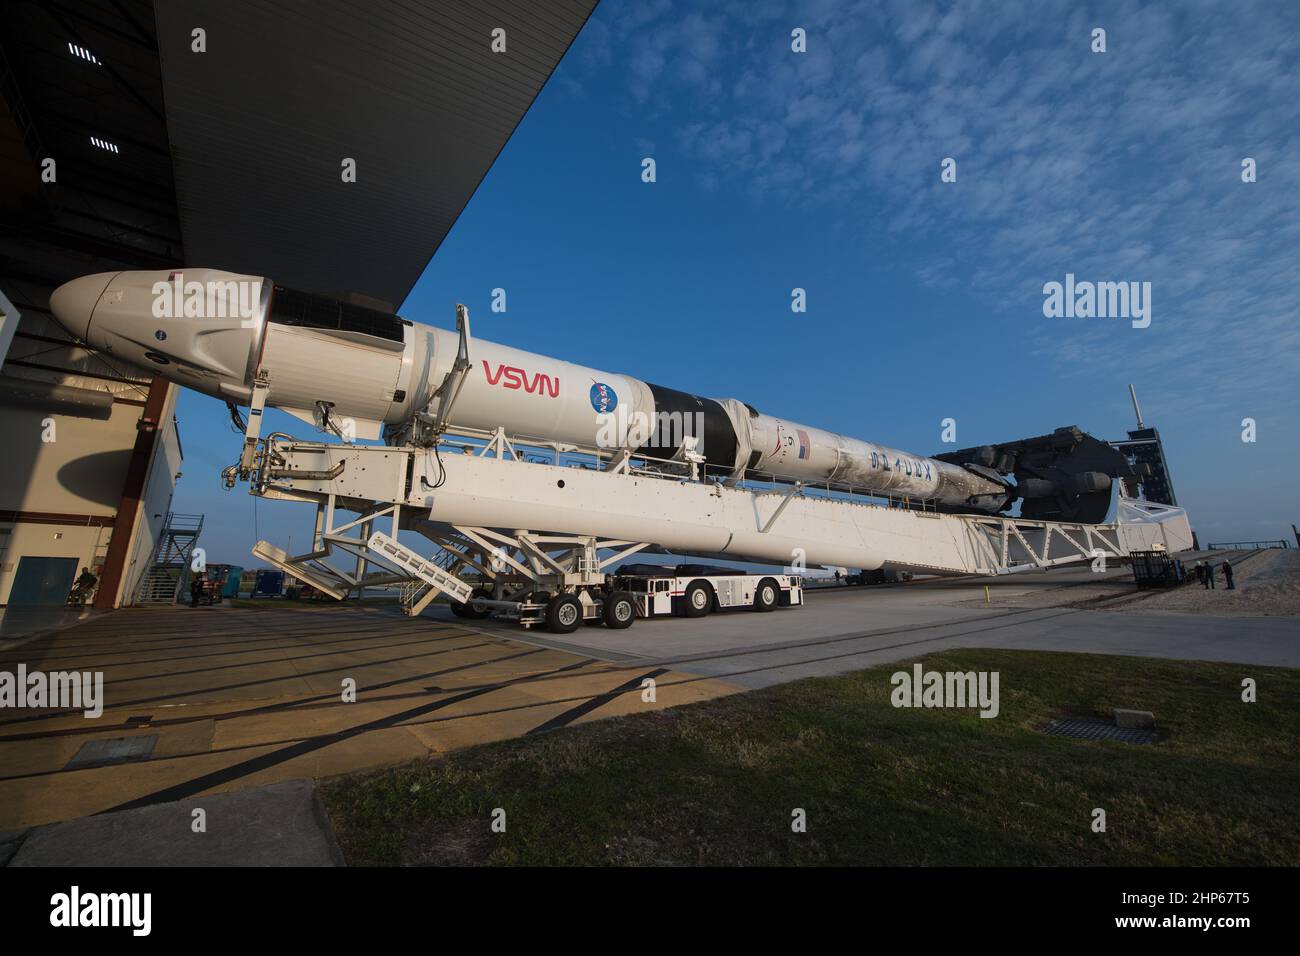 Eine SpaceX Falcon 9-Rakete mit der Crew Dragon-Sonde des Unternehmens an Bord wird beim Start des Launch Complex 39A aus der horizontalen Integrationseinrichtung ausgerollt, da die Vorbereitungen für die Crew-2-Mission am Freitag, den 16. April 2021, im Kennedy Space Center der NASA in Florida fortgesetzt werden. Stockfoto